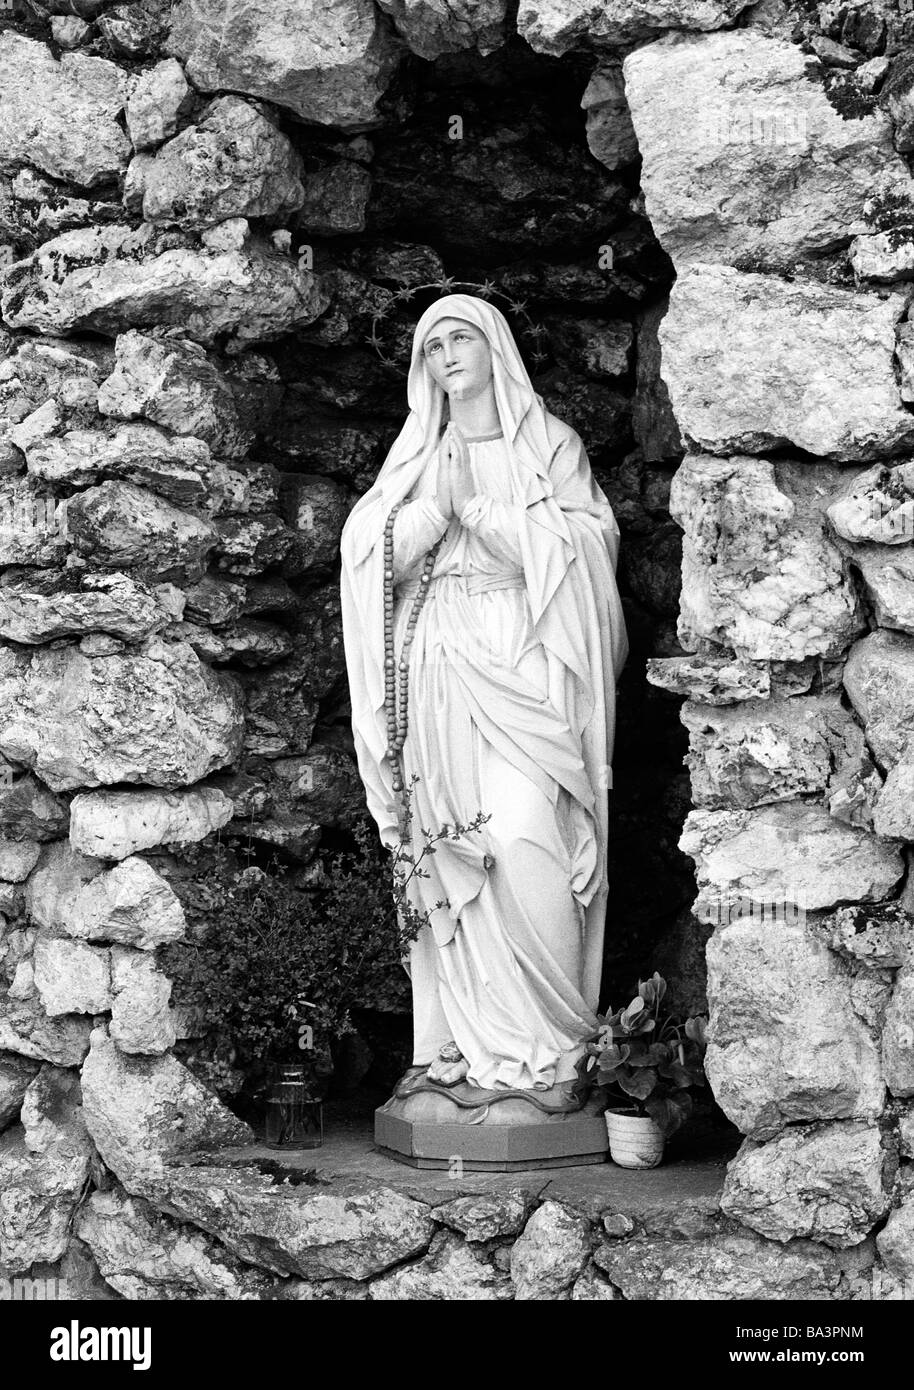 Achtziger Jahre, Religion, Christentum und Statue, betenden in einer Madonna Grotte, Sauerland, Westfalen, Nordrhein-Westfalen Banque D'Images